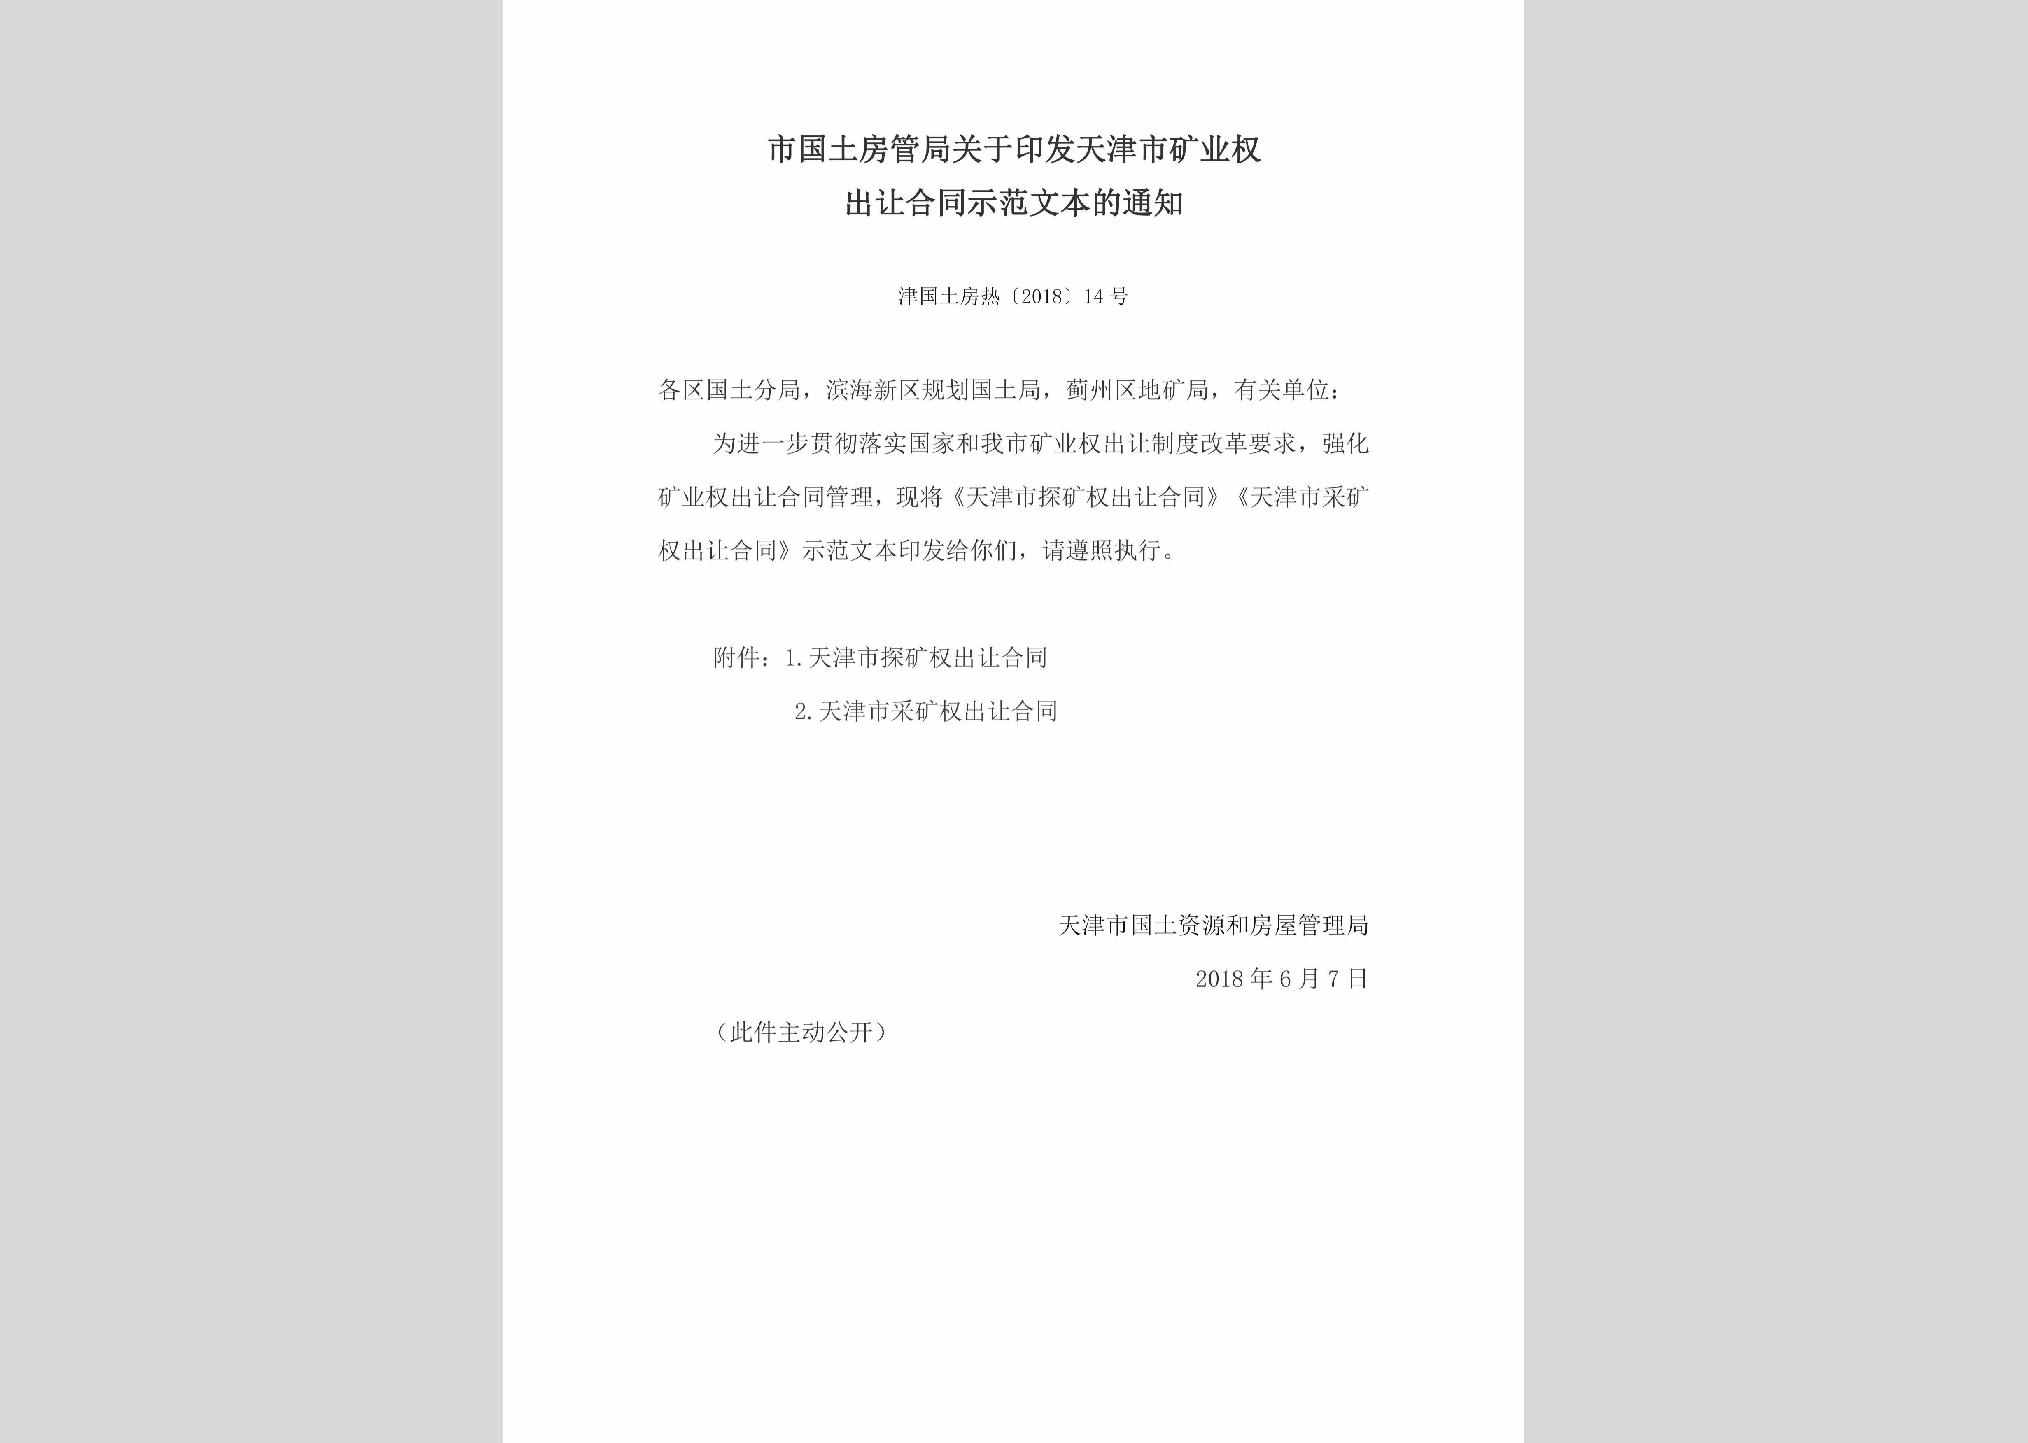 津国土房热[2018]14号：市国土房管局关于印发天津市矿业权出让合同示范文本的通知